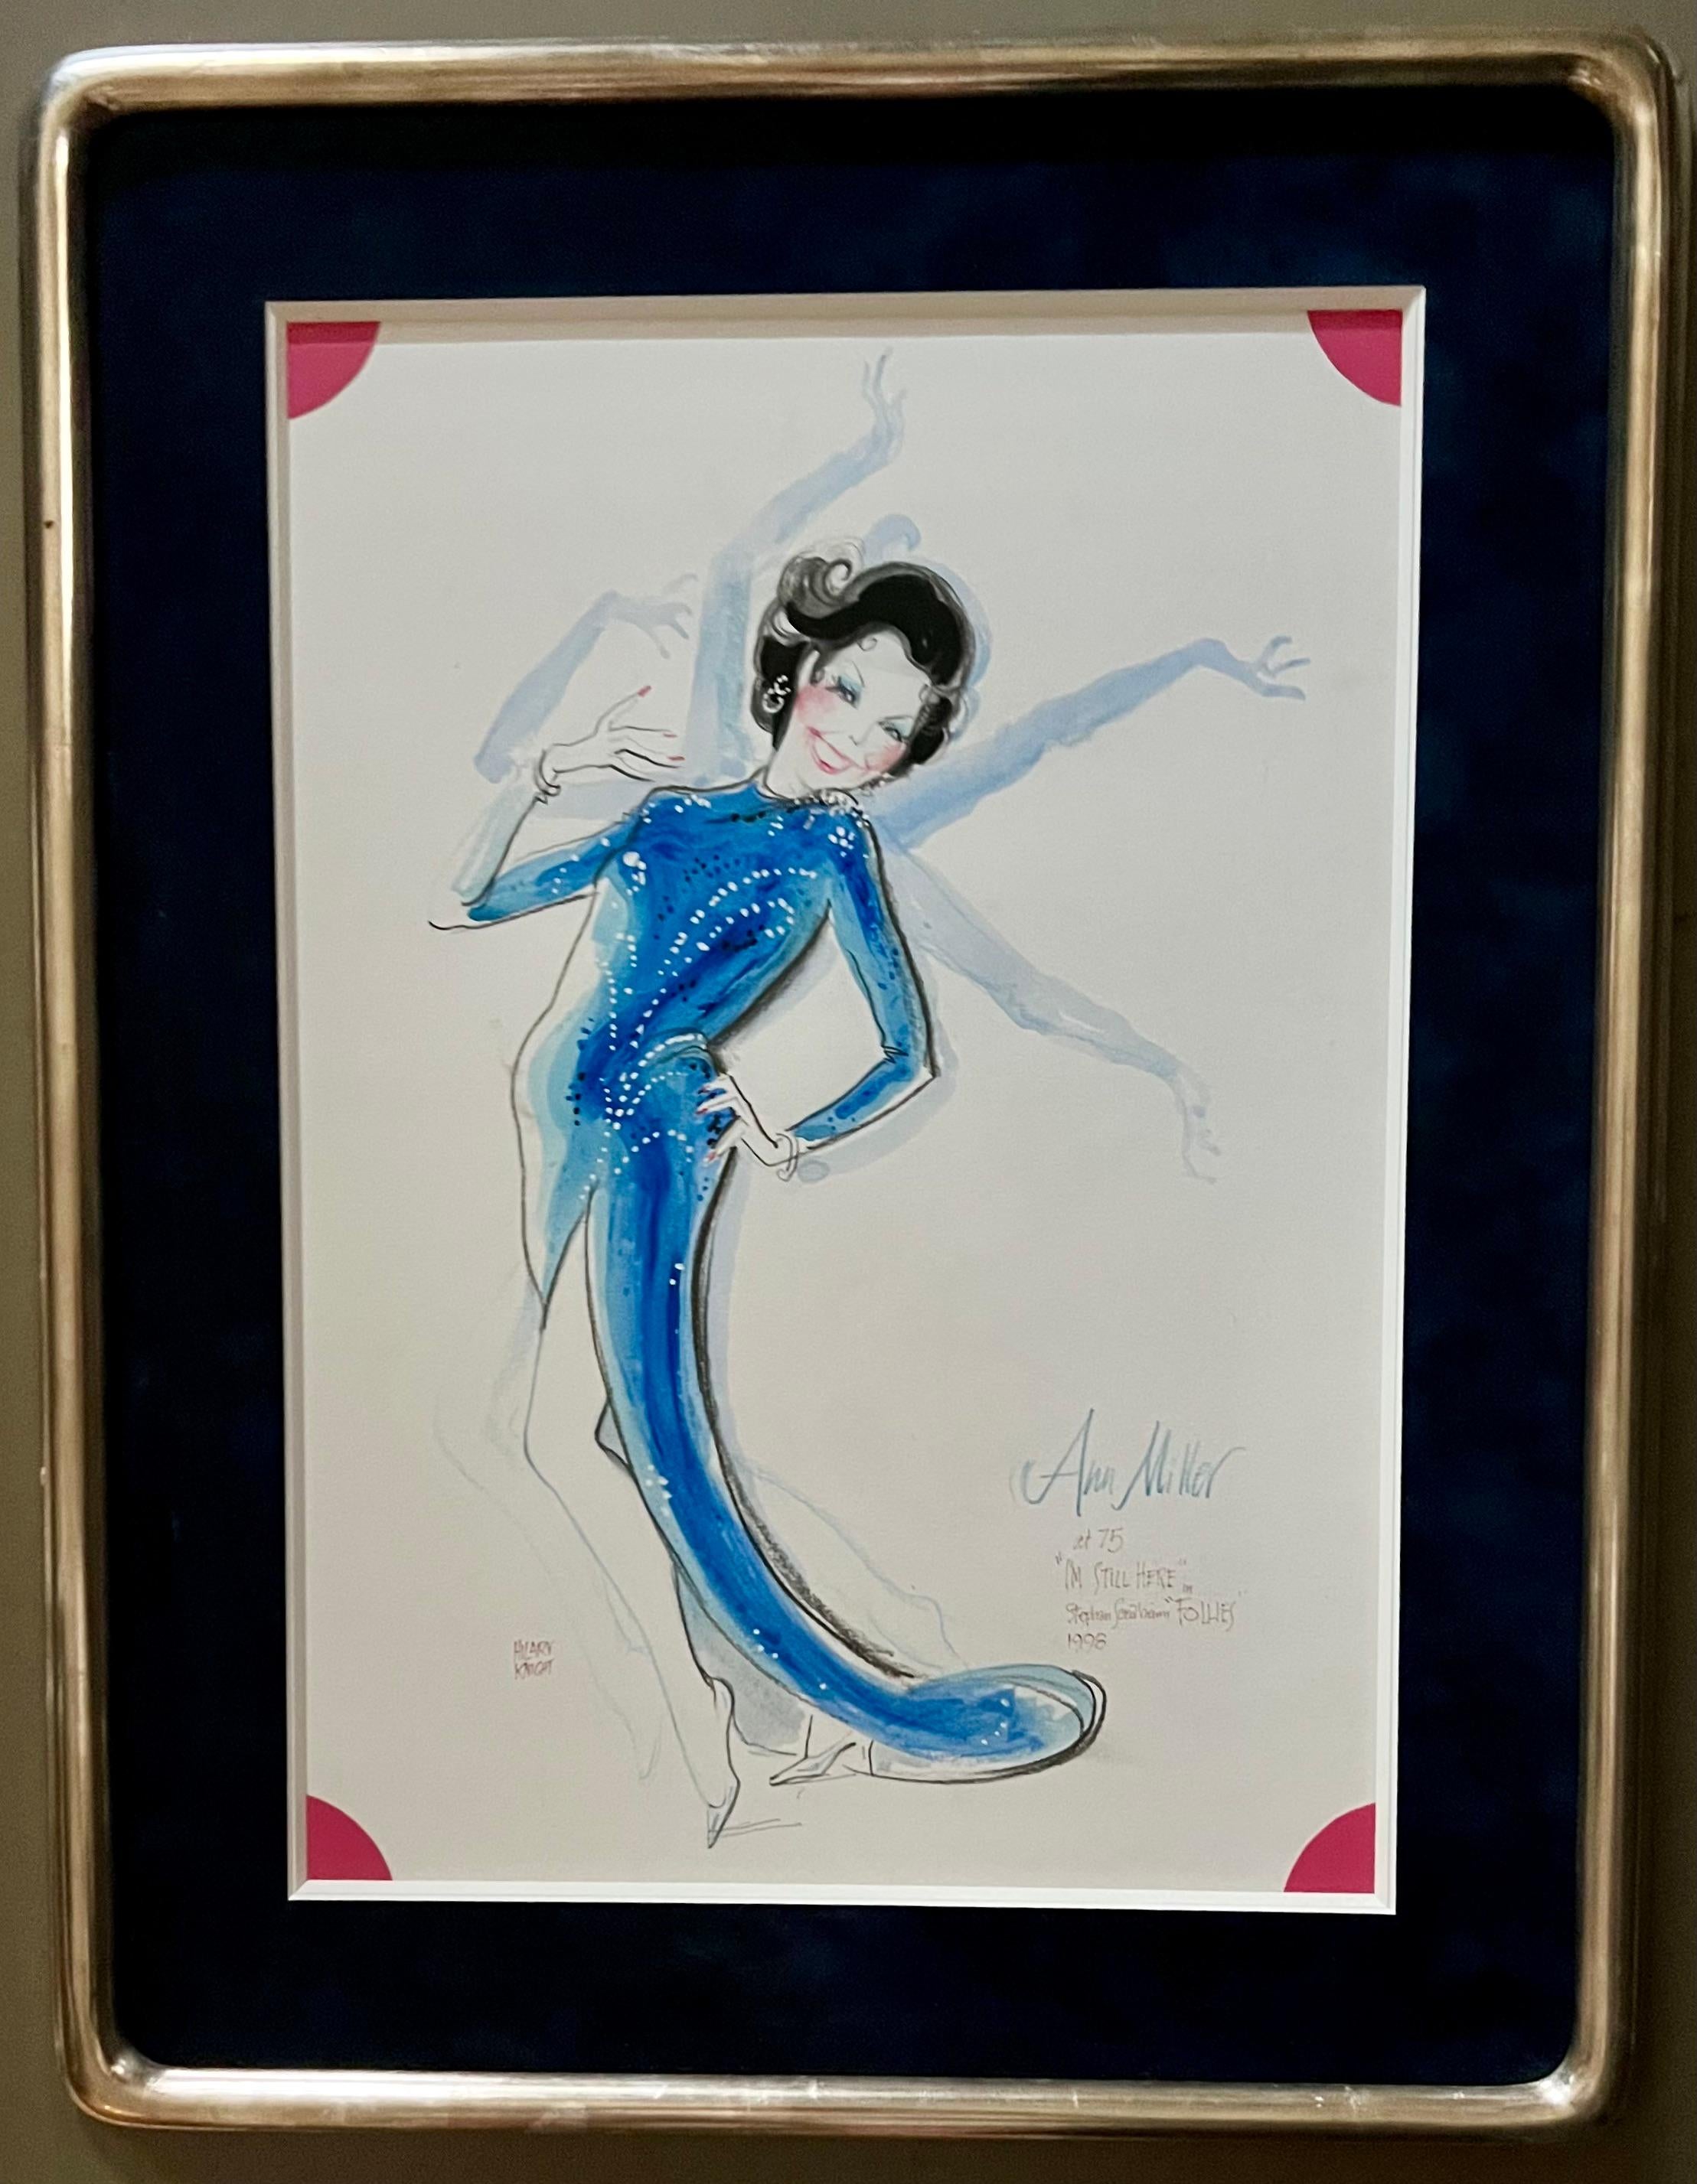 Ann Miller in Follies Broadway - Illustration de dessin musical contemporain d'Eloise - Performance Mixed Media Art par Hilary Knight